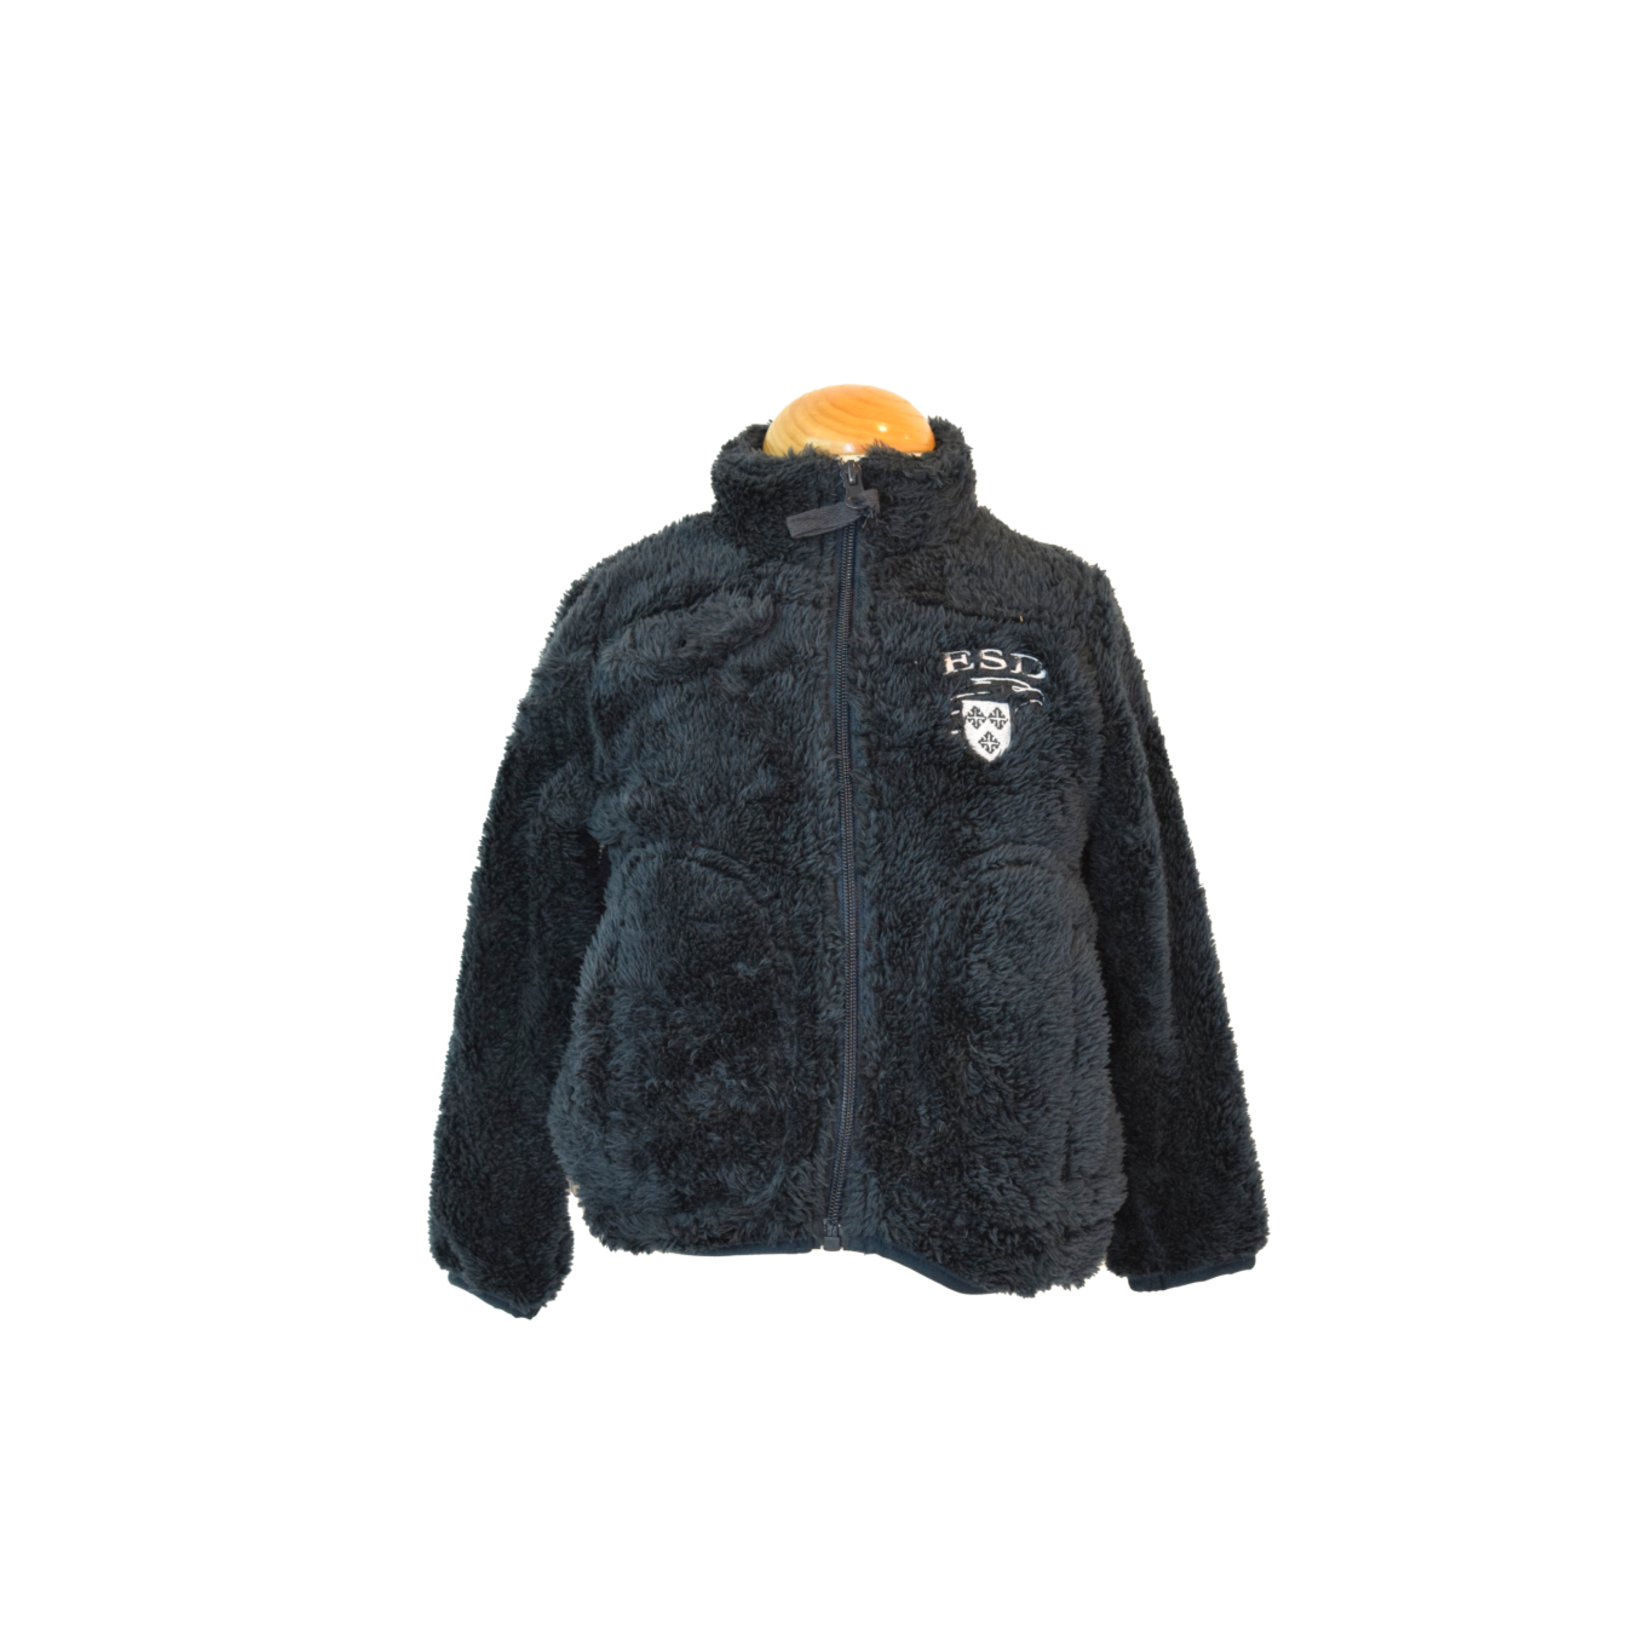 Garb Toddler Sherpa Jacket